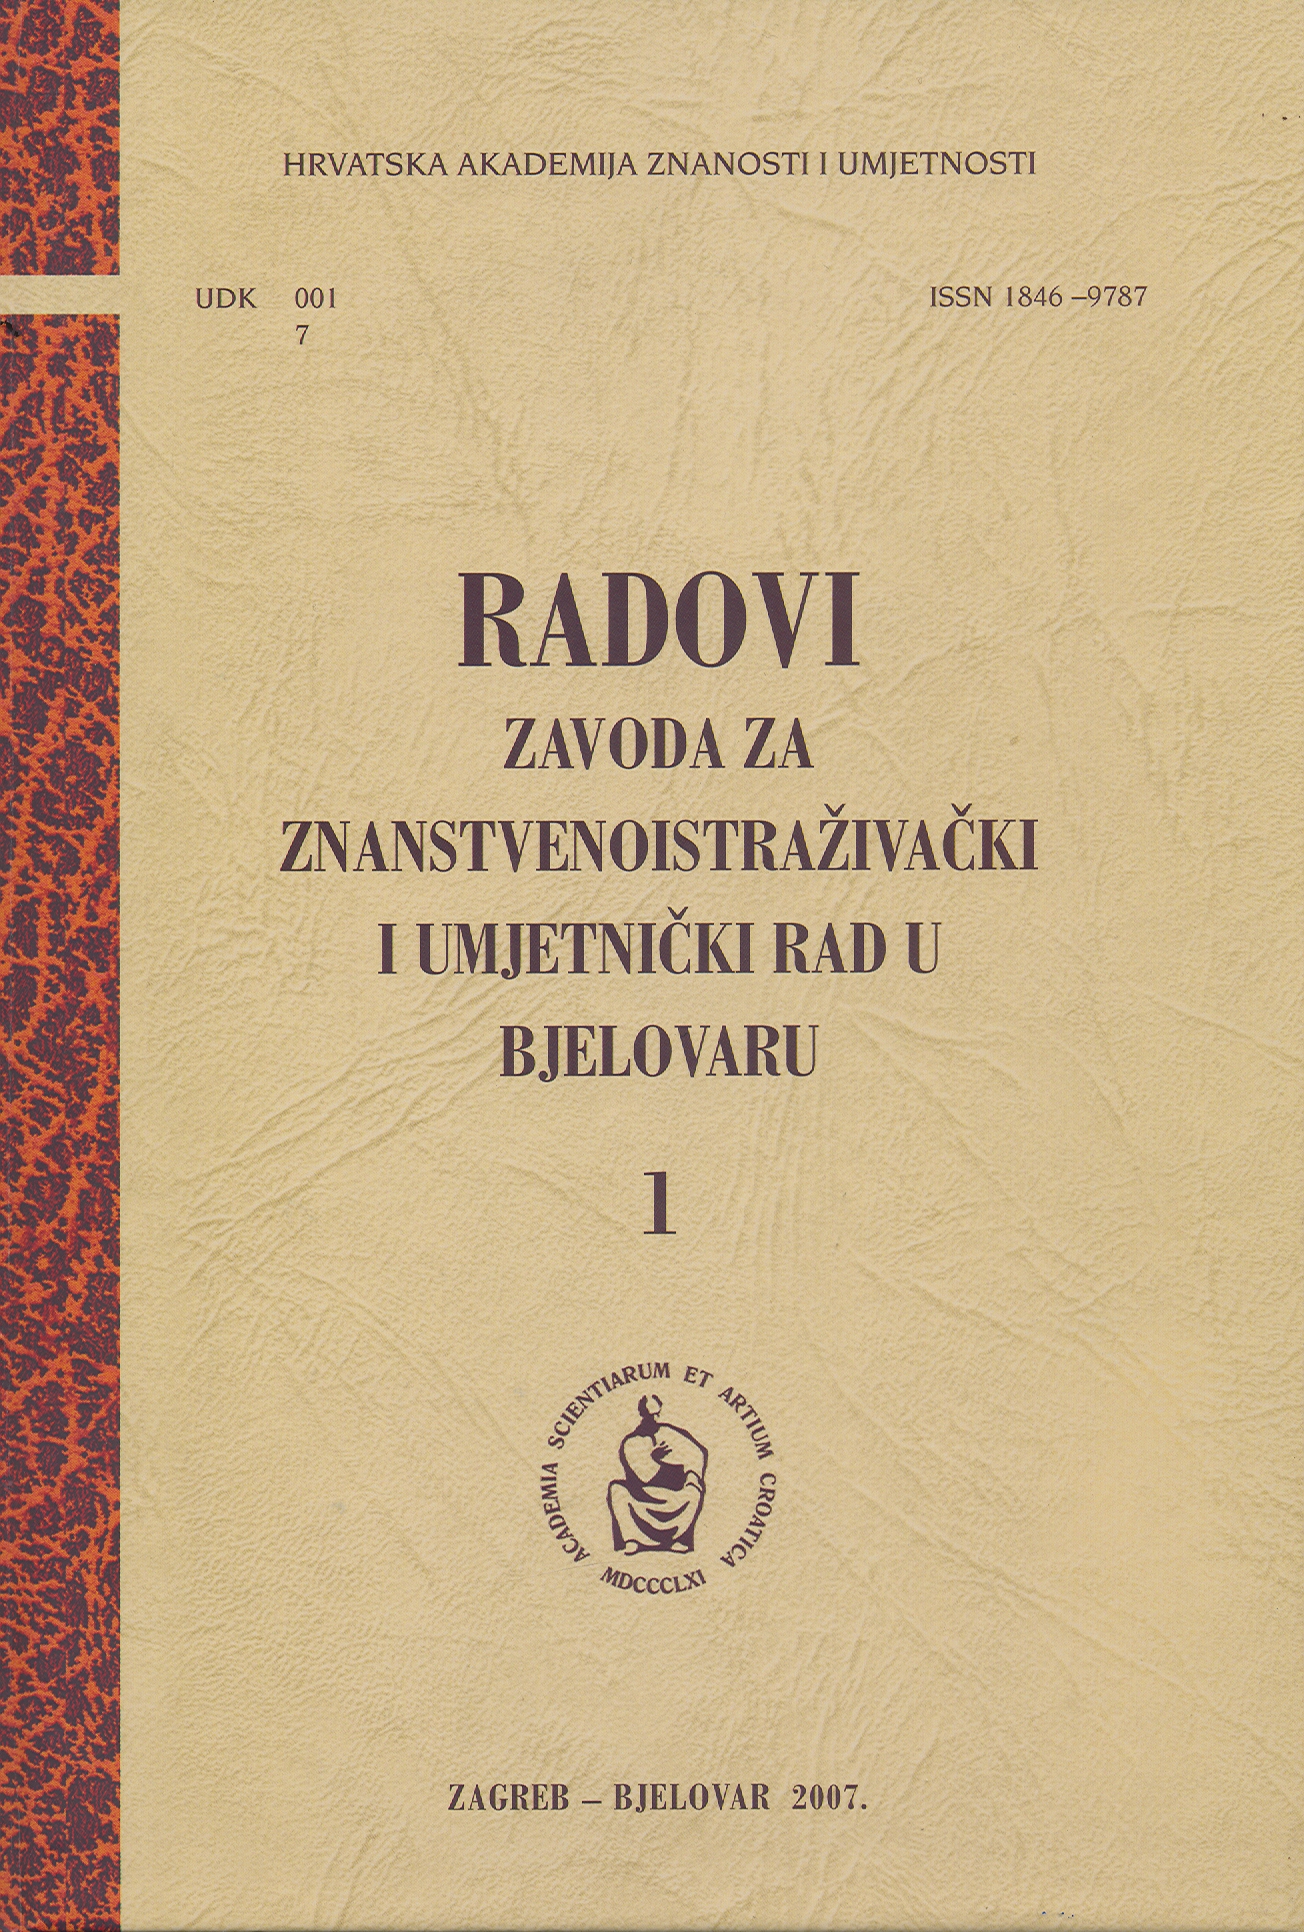 Božidar Rogina (1901-1967) – The Pioneer of Food Chemistry in Croatia Cover Image